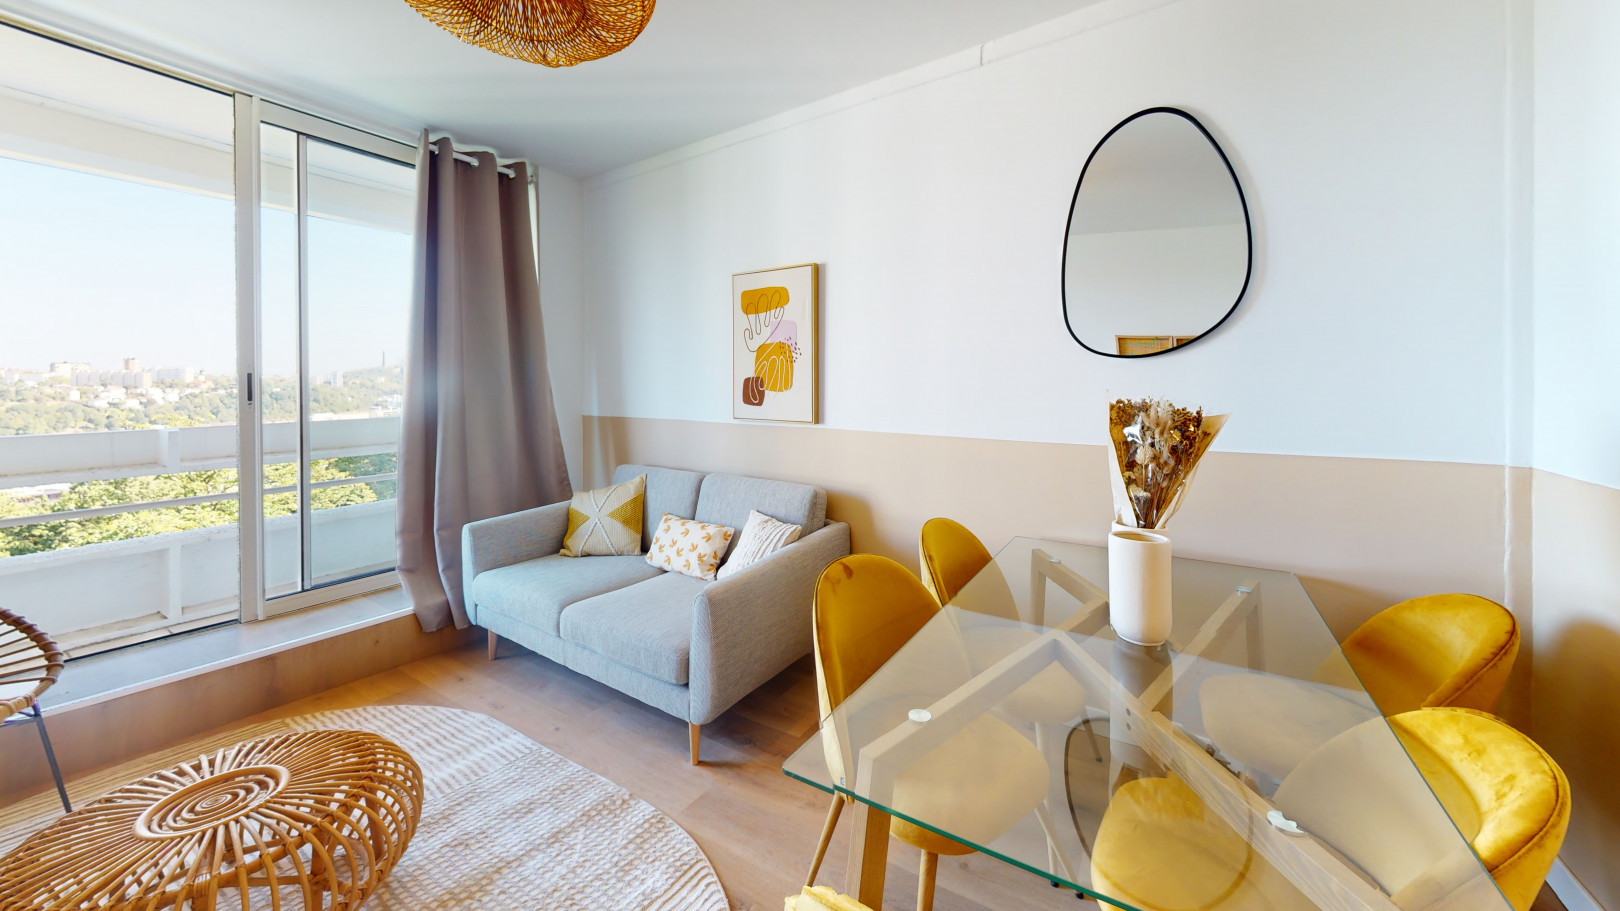 
                                                Colocation
                                                 Colocation de 5 chambres dans un appartement entièrement meublé et rénové avec vue imprenable à Lyon 9